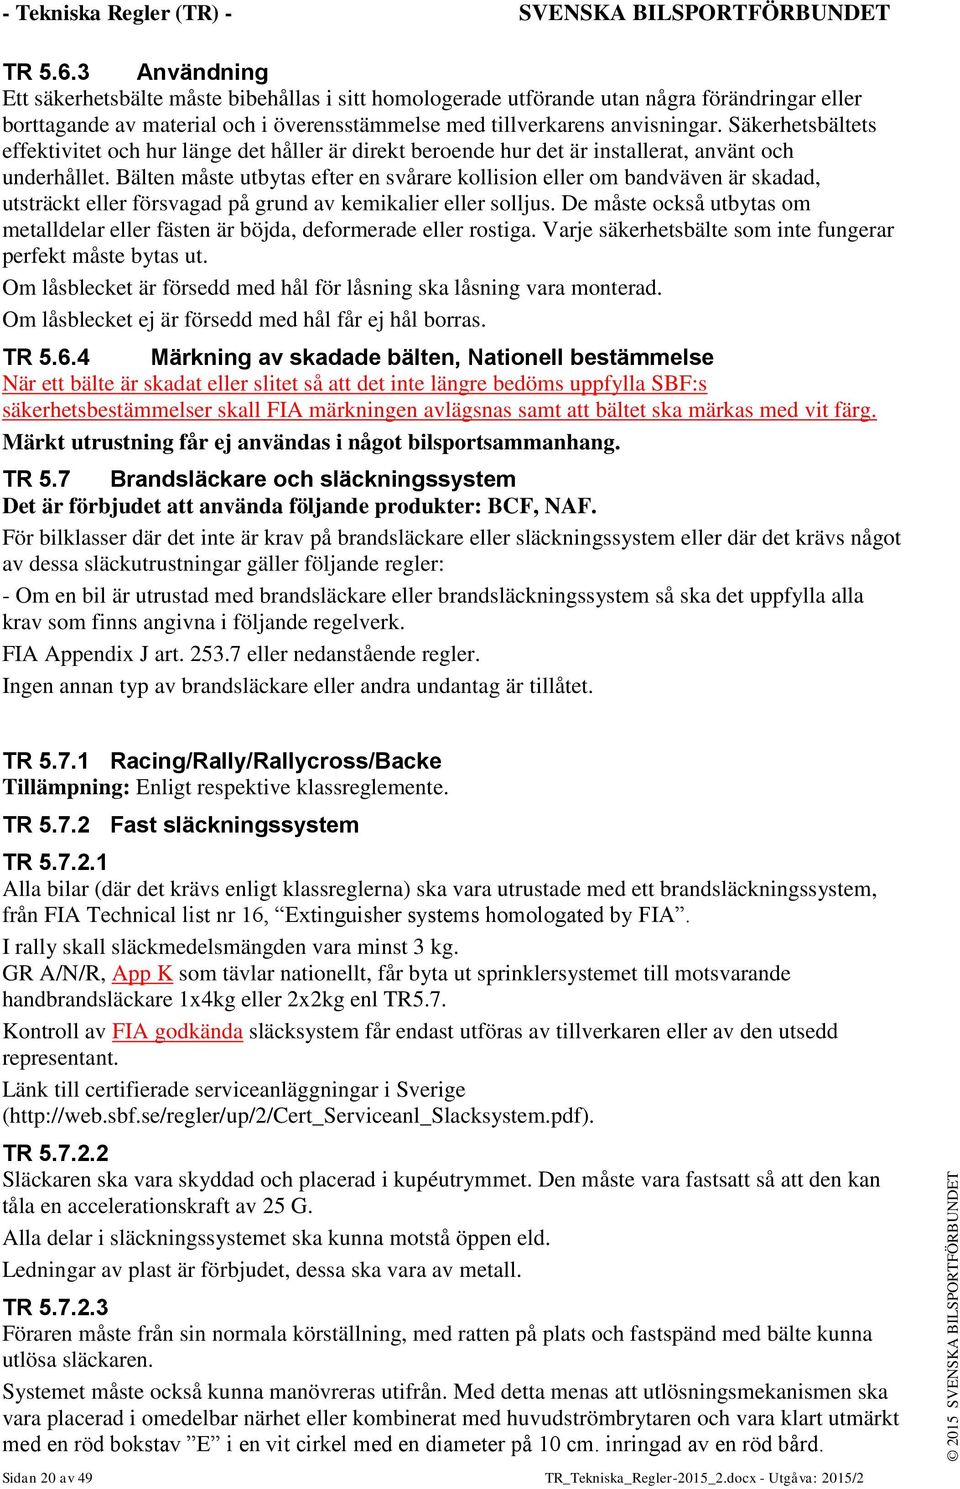 Tekniska Regler För Rally, Racing samt Rallycross - PDF Free Download